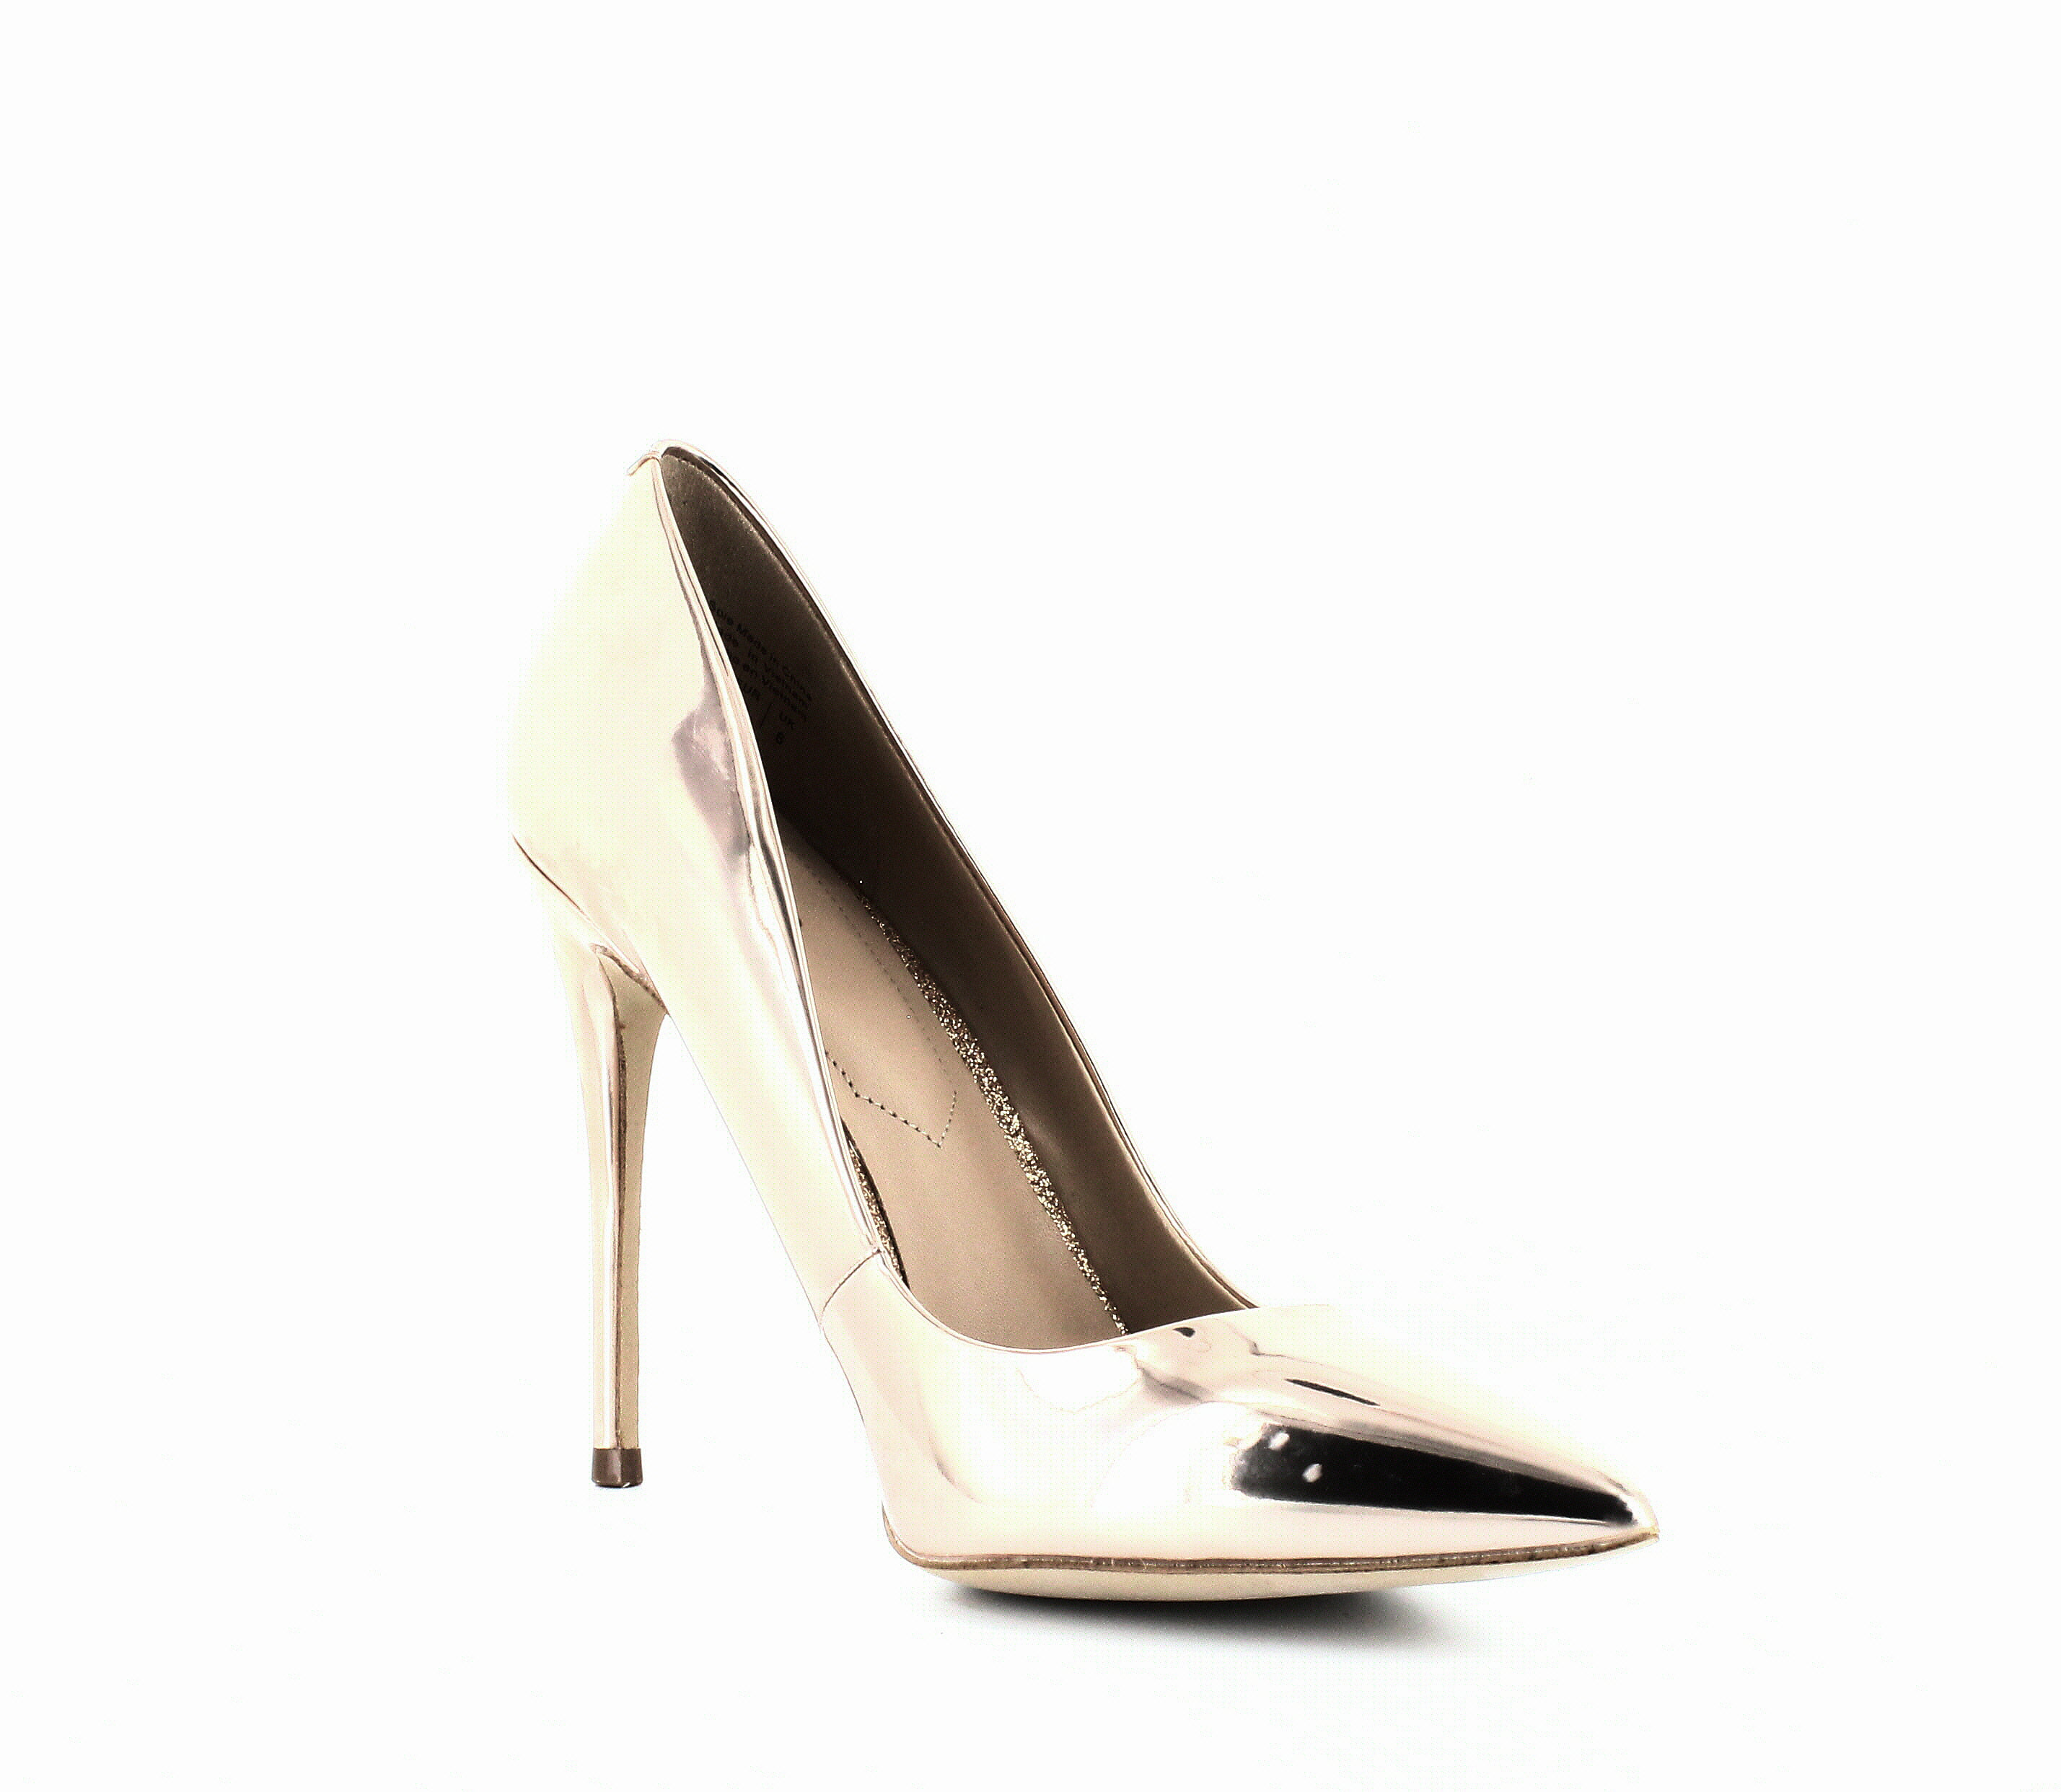 aldo metallic heels